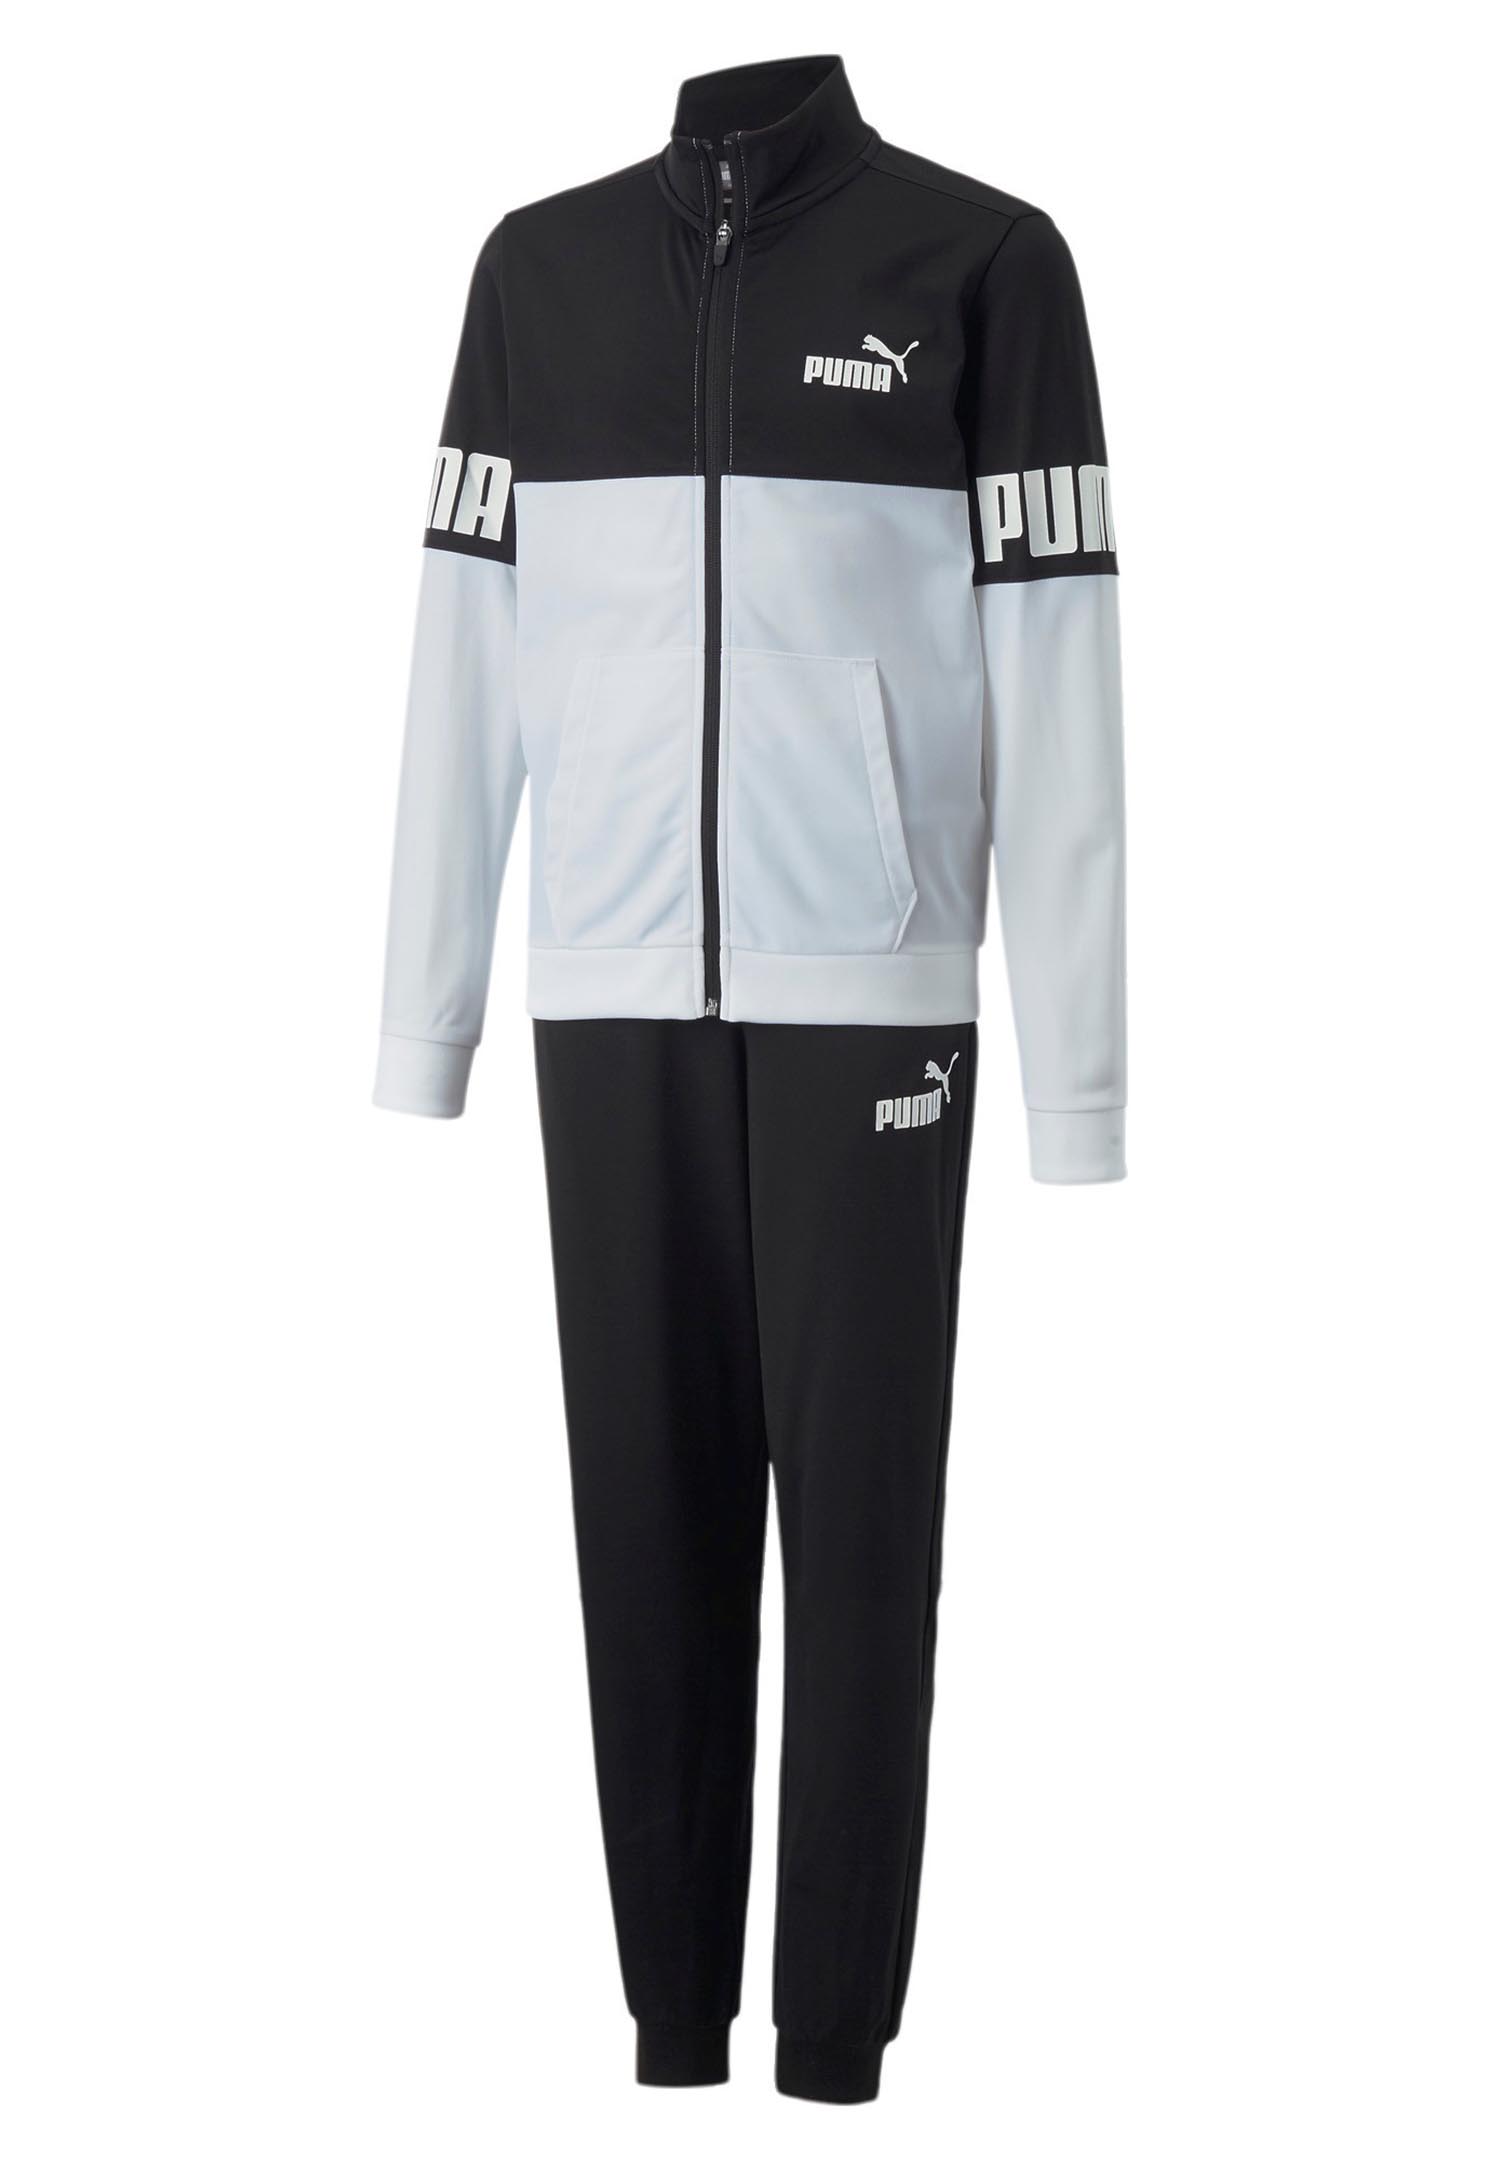 Puma Power Poly Suit B Kinder Unisex Trainingsanzug Sportanzug 670115 01 schwarz weiss